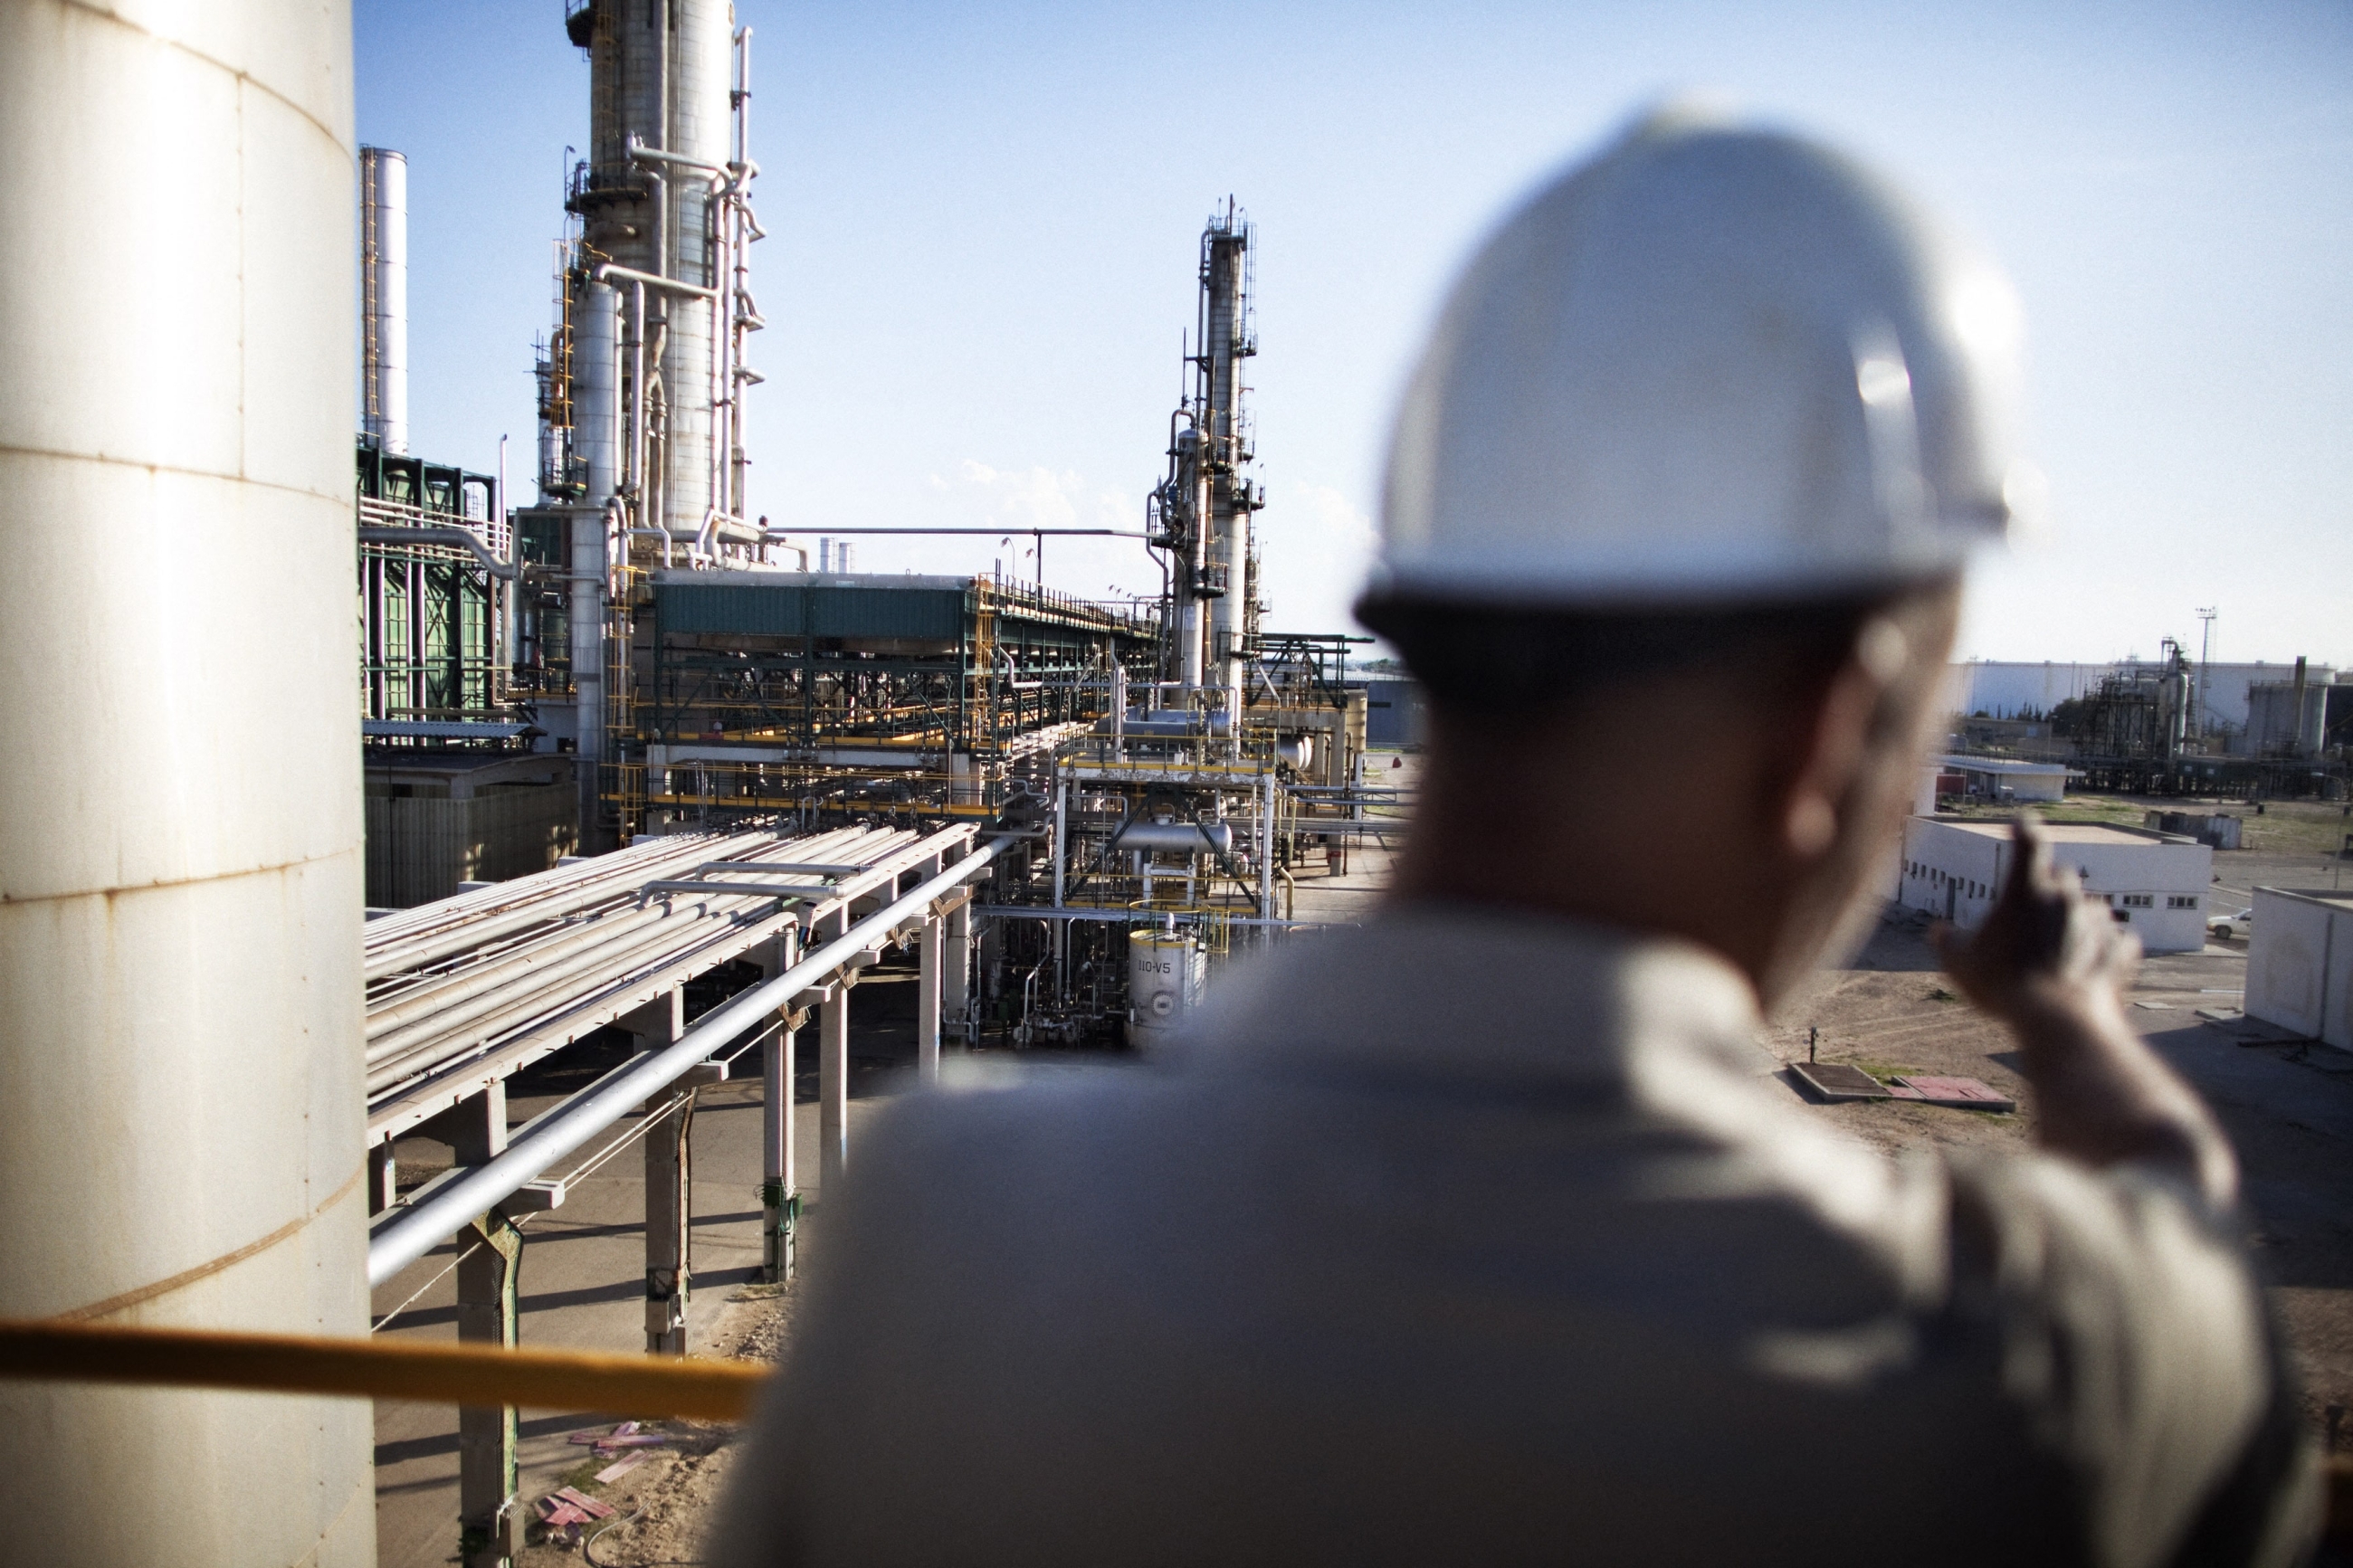 Un ouvrier de la raffinerie de pétrole de Zaouïa, à une quarantaine de kilomètres à l’ouest de Tripoli, sur une plateforme surplombant l’installation, le 27 octobre 2011 (AFP) 